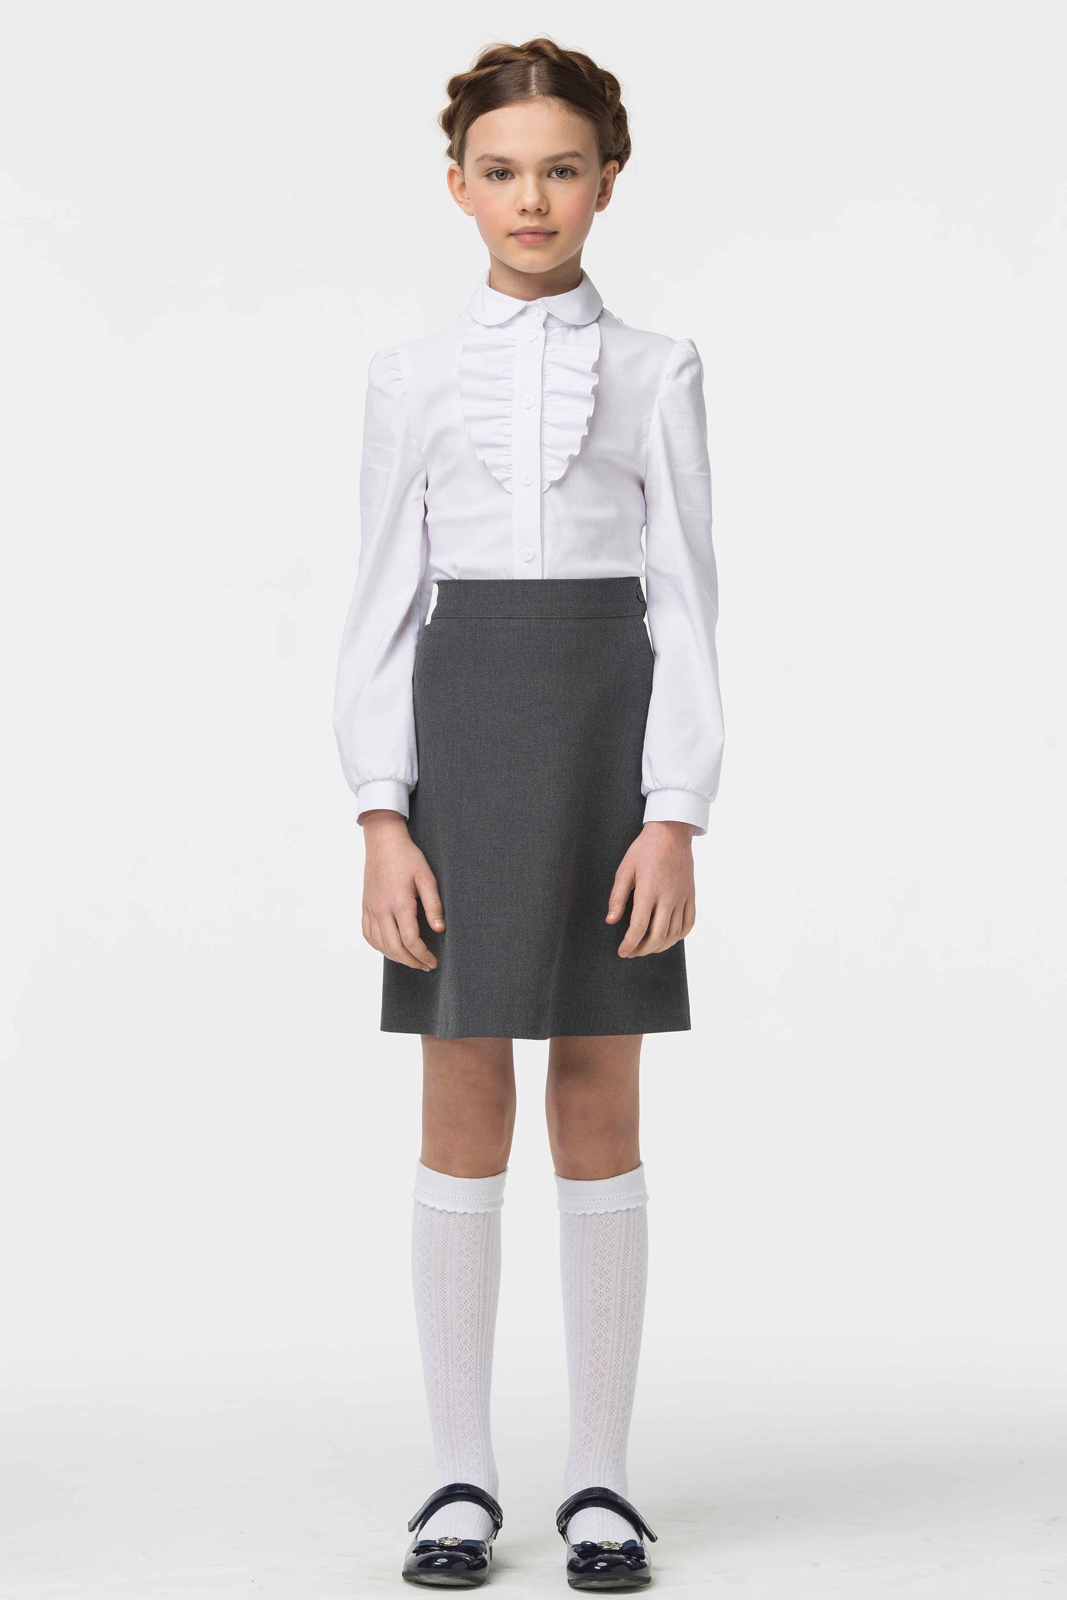 Блузка для девочки Смена, цвет: белый. 16с507. Размер 128